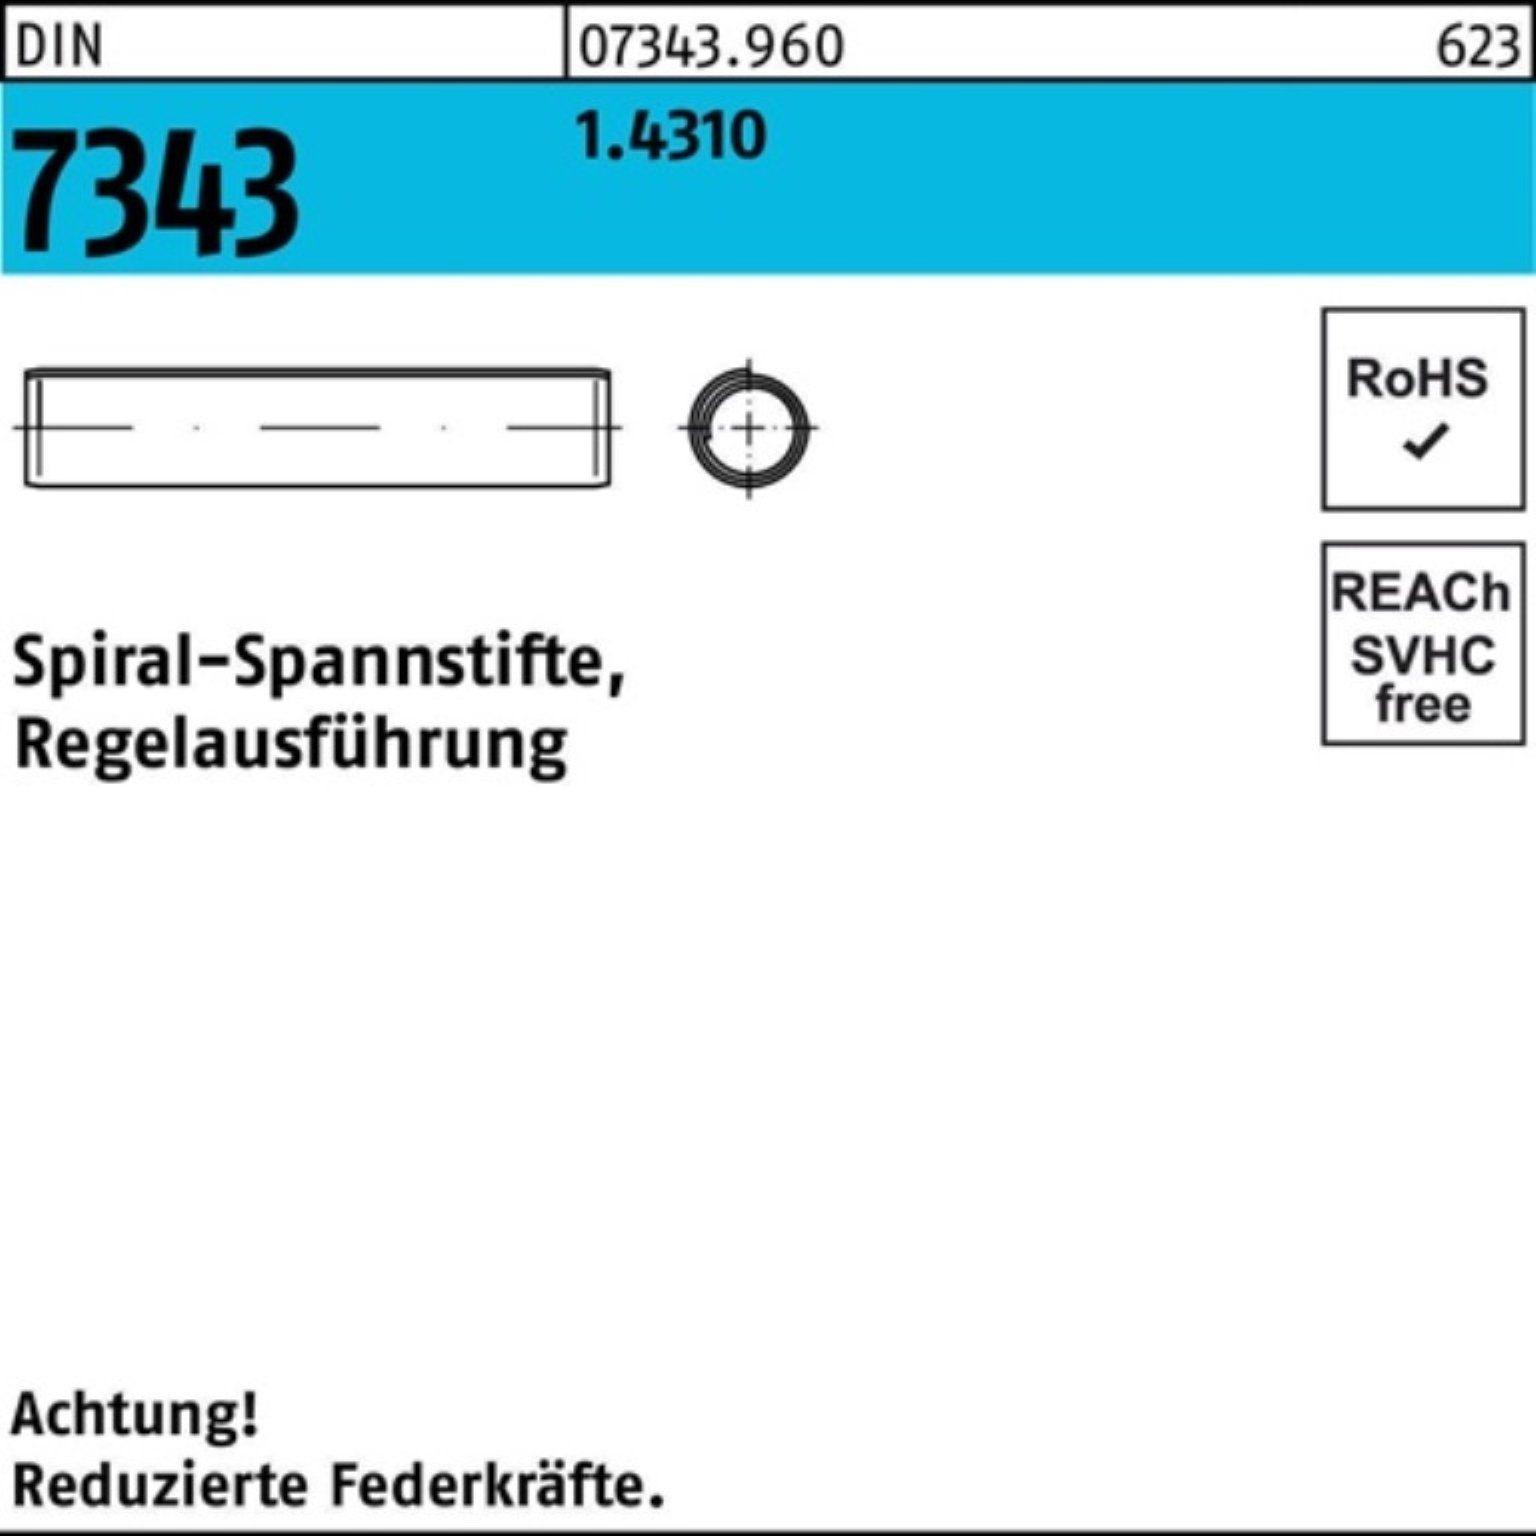 Reyher Spannstift 1000er Pack Spiralspannstift DIN 7343/ISO 8750 1,5x 6 1.4310 Regelausf